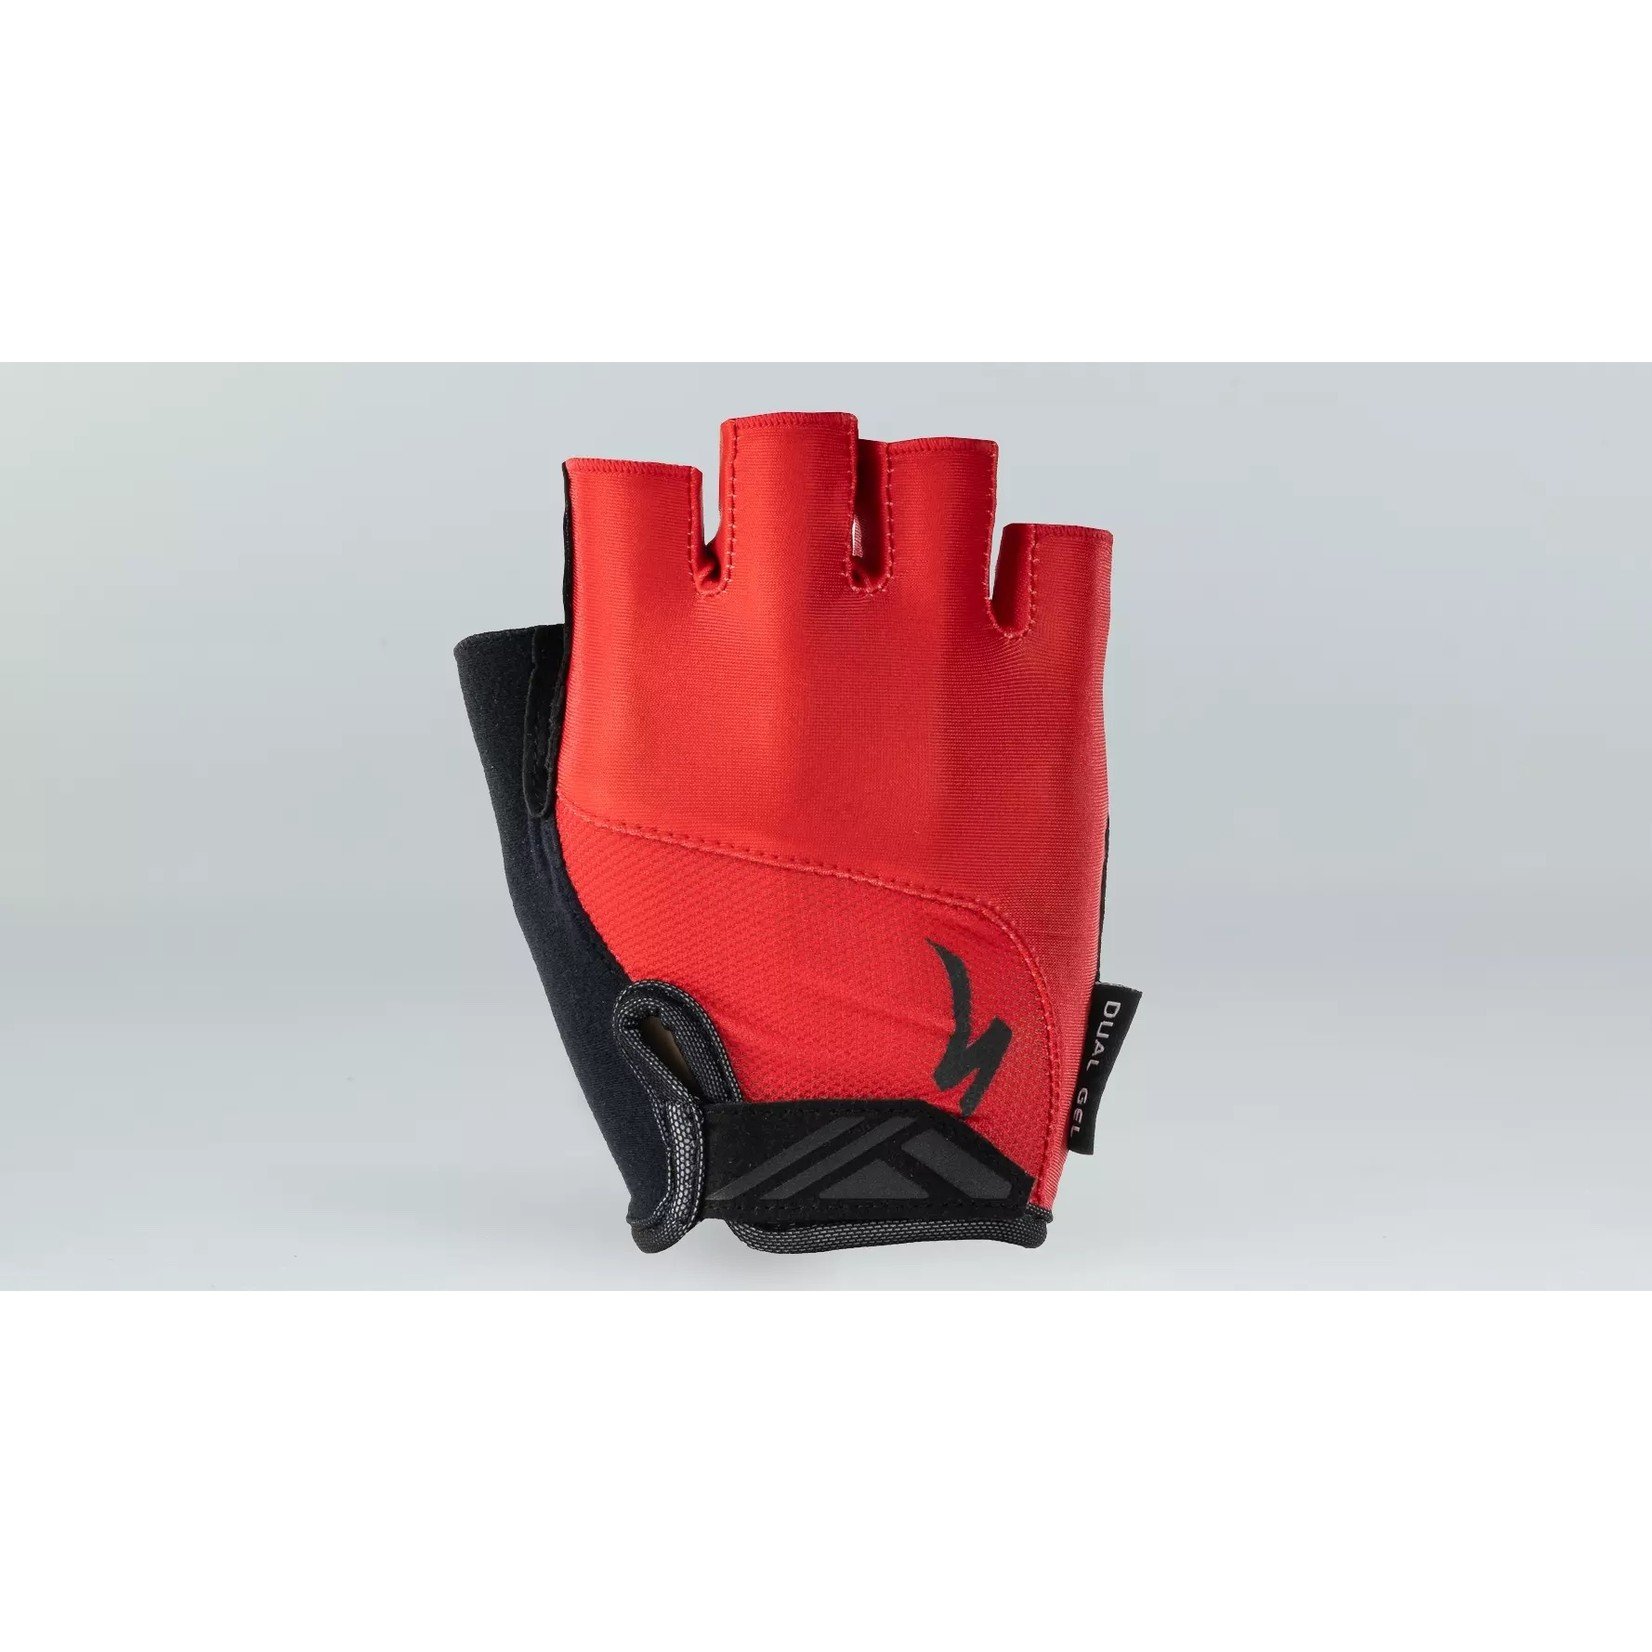 Specialized Body Geometry Dual Gel Fingerless Glove